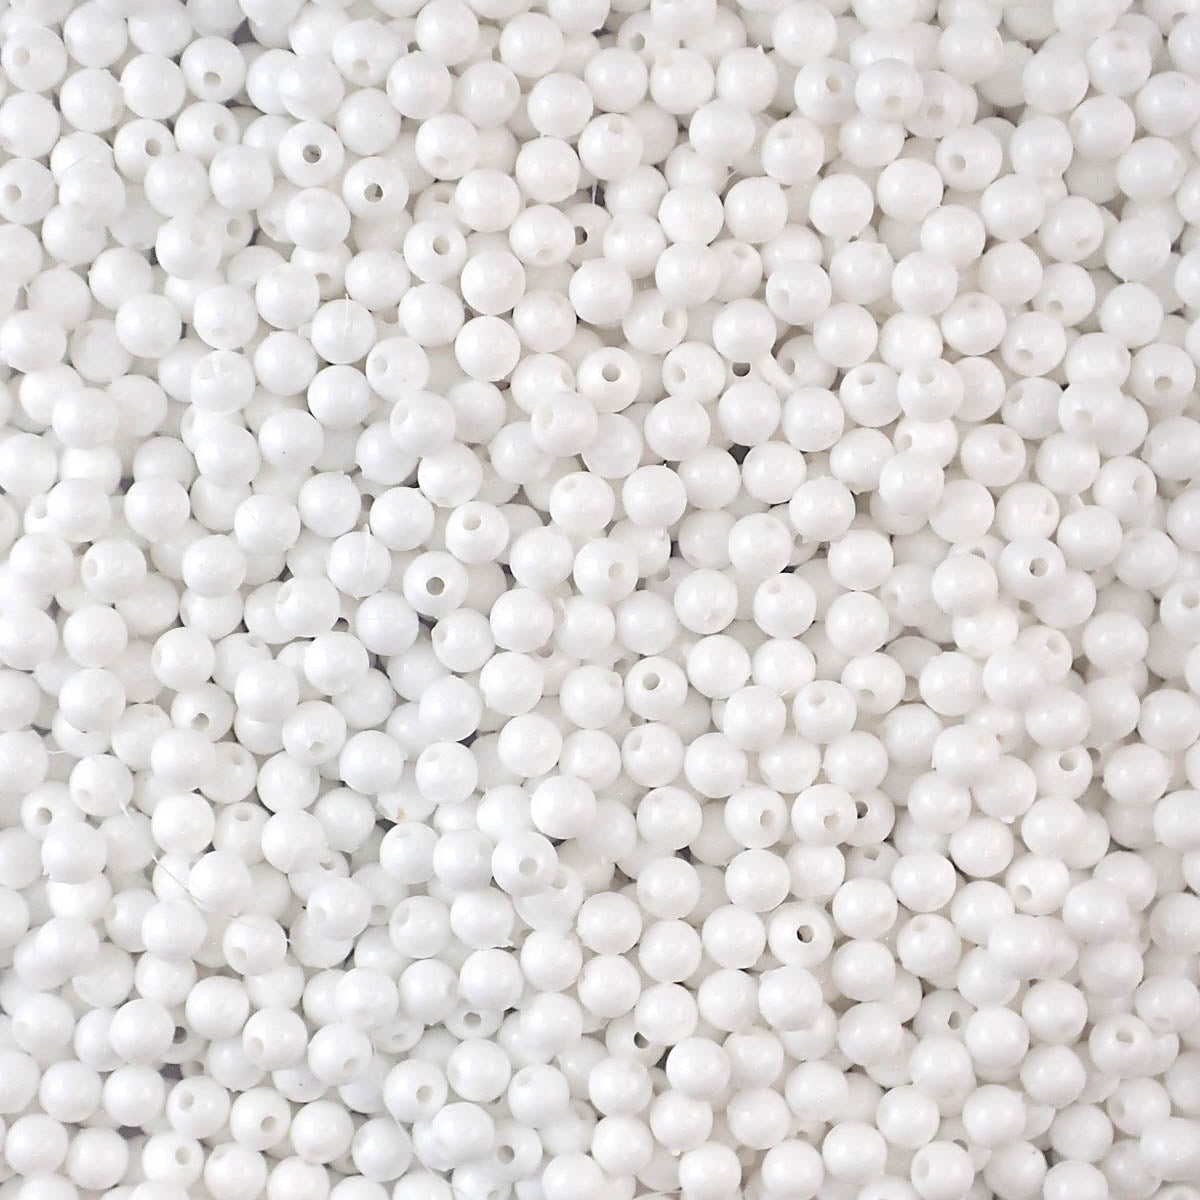 6mm Round Plastic Craft Beads, White, 500 beads